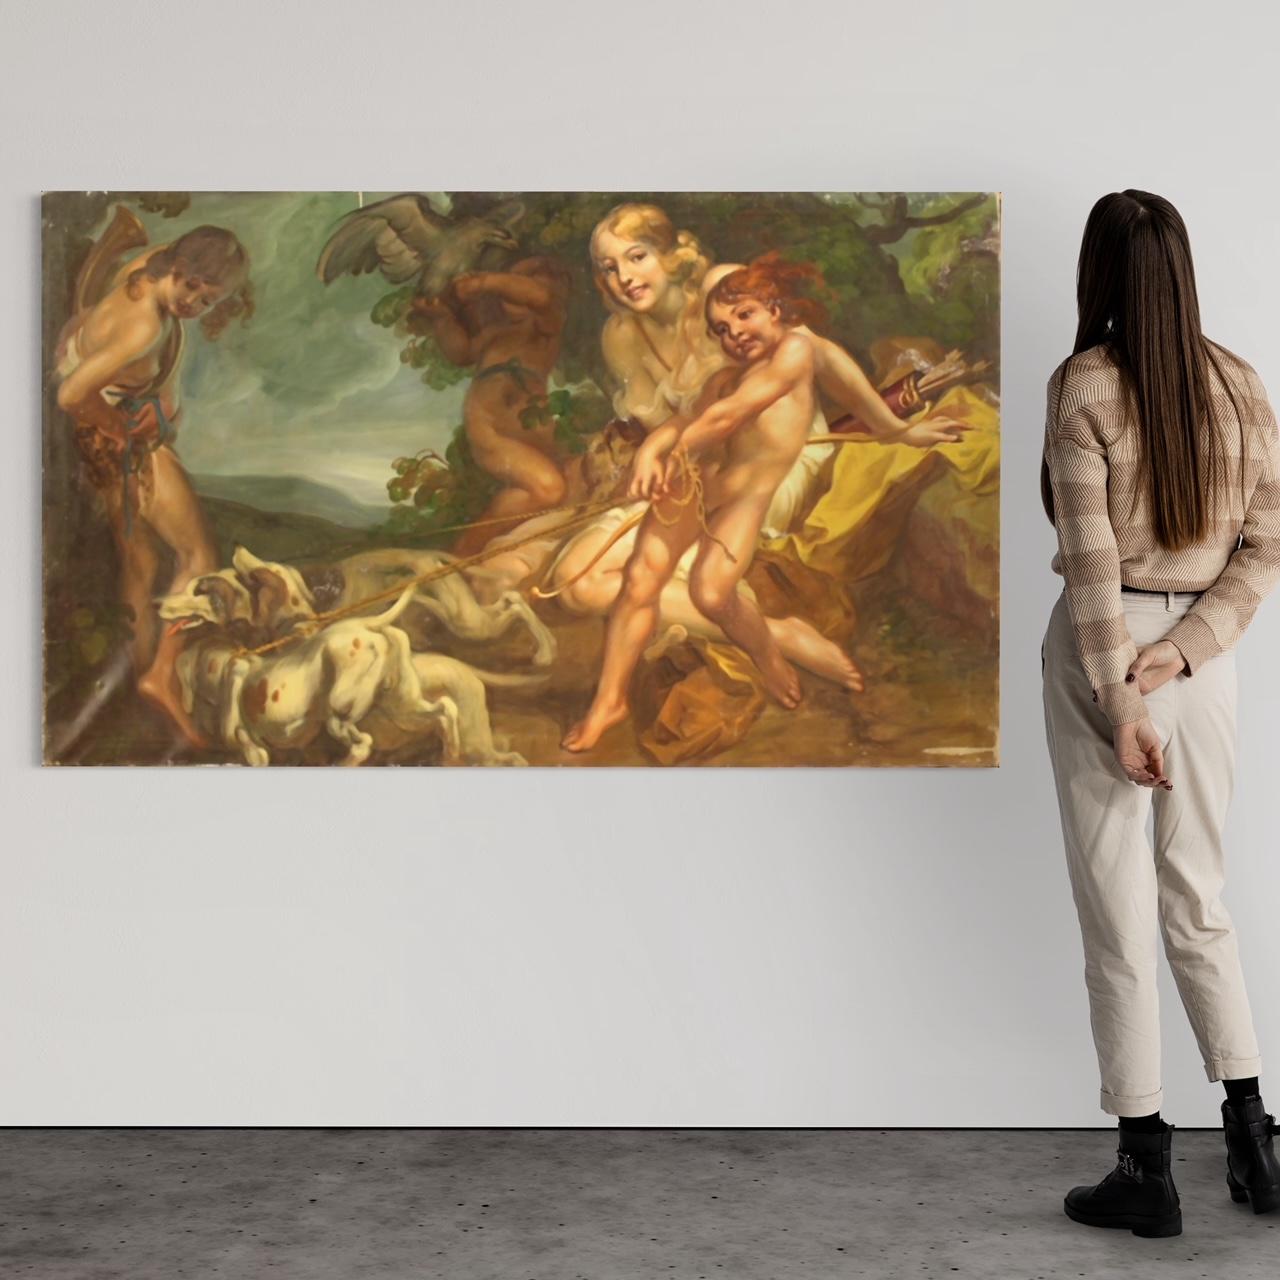 Peinture italienne de la première moitié du XXe siècle. Cadre à l'huile sur toile représentant un sujet mythologique, Diane chasseresse, d'une excellente qualité picturale. Peinture d'une grande ampleur et d'un grand impact, d'une excellente